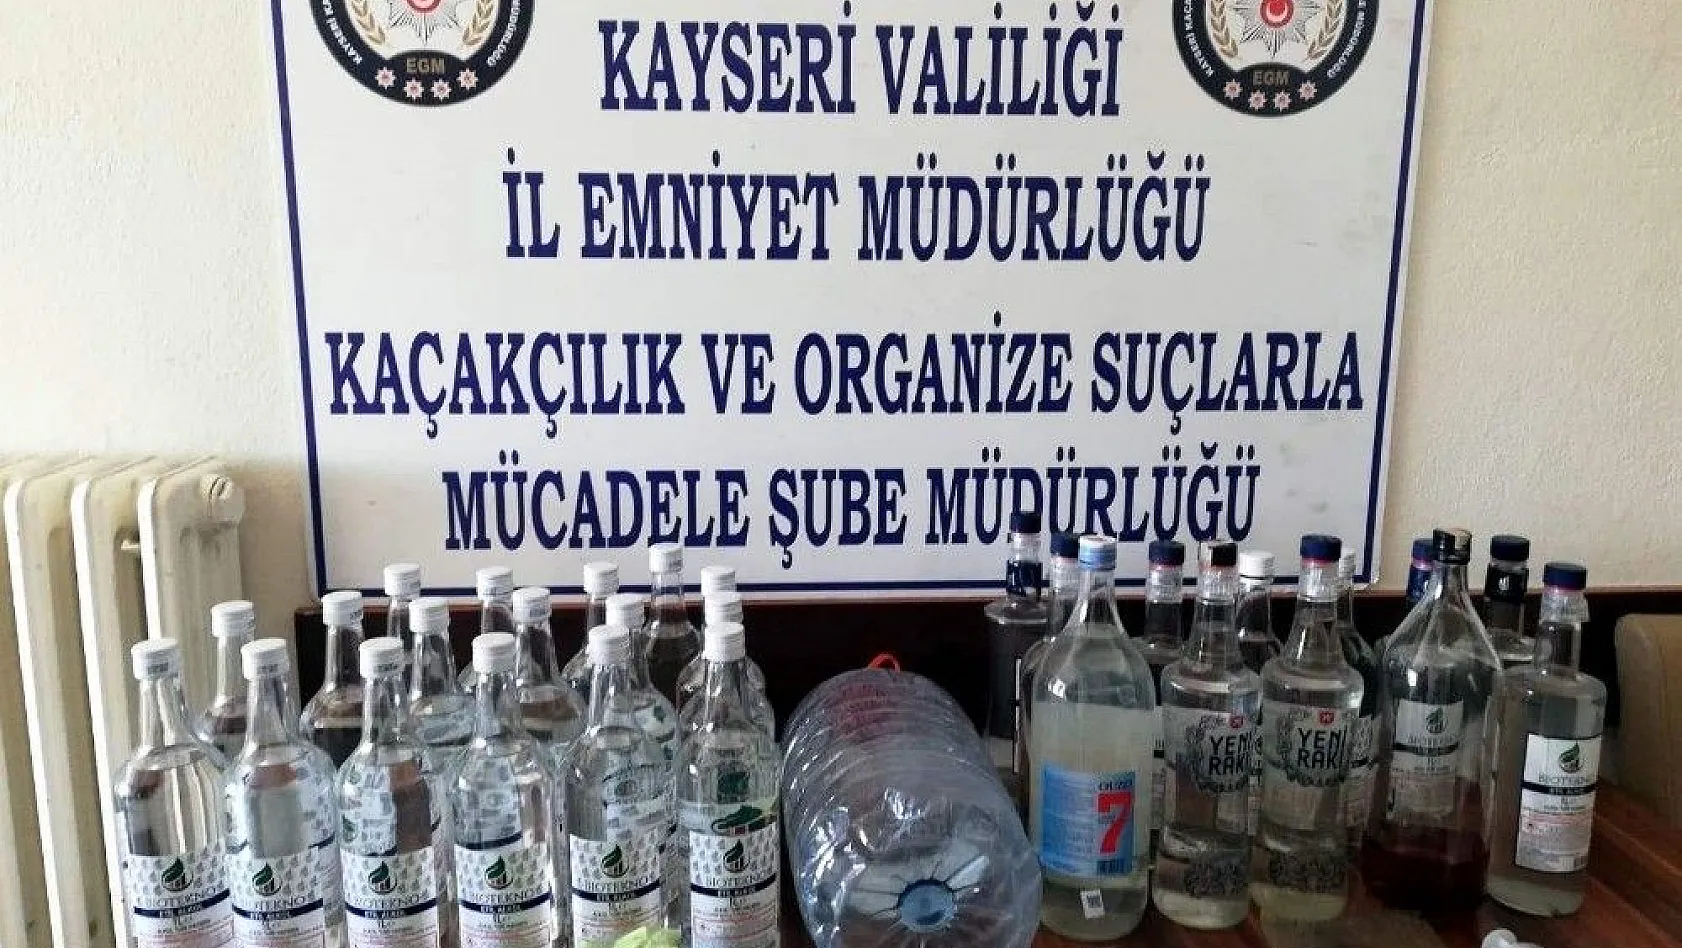 Kayseri'de kaçak alkol operasyonu